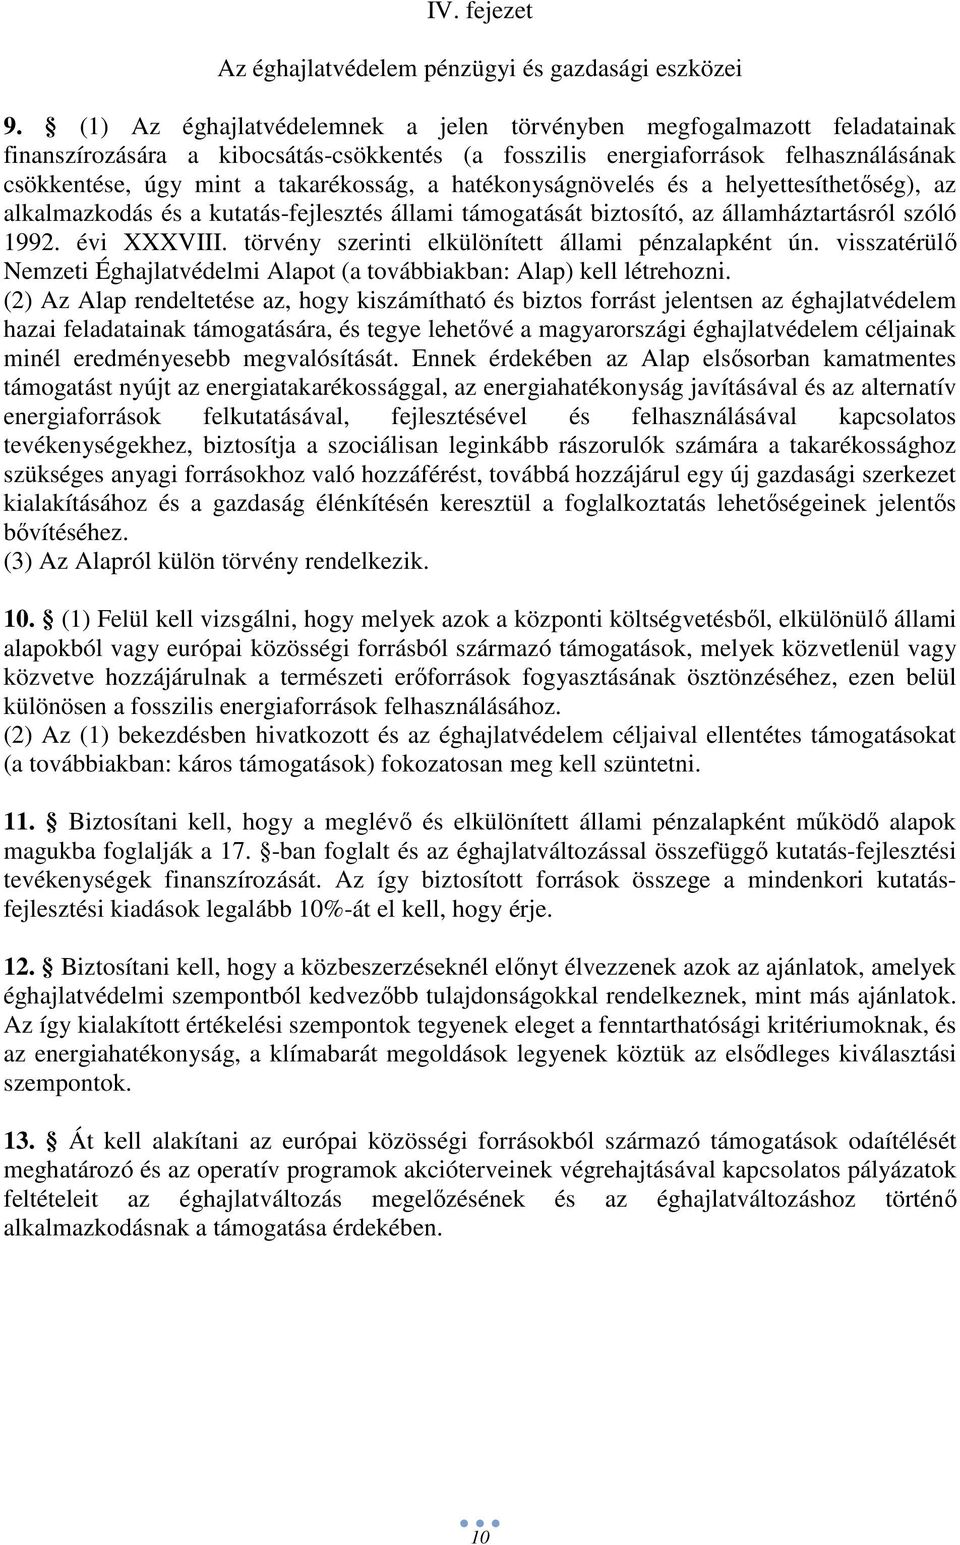 hatékonyságnövelés és a helyettesíthetıség), az alkalmazkodás és a kutatás-fejlesztés állami támogatását biztosító, az államháztartásról szóló 1992. évi XXXVIII.